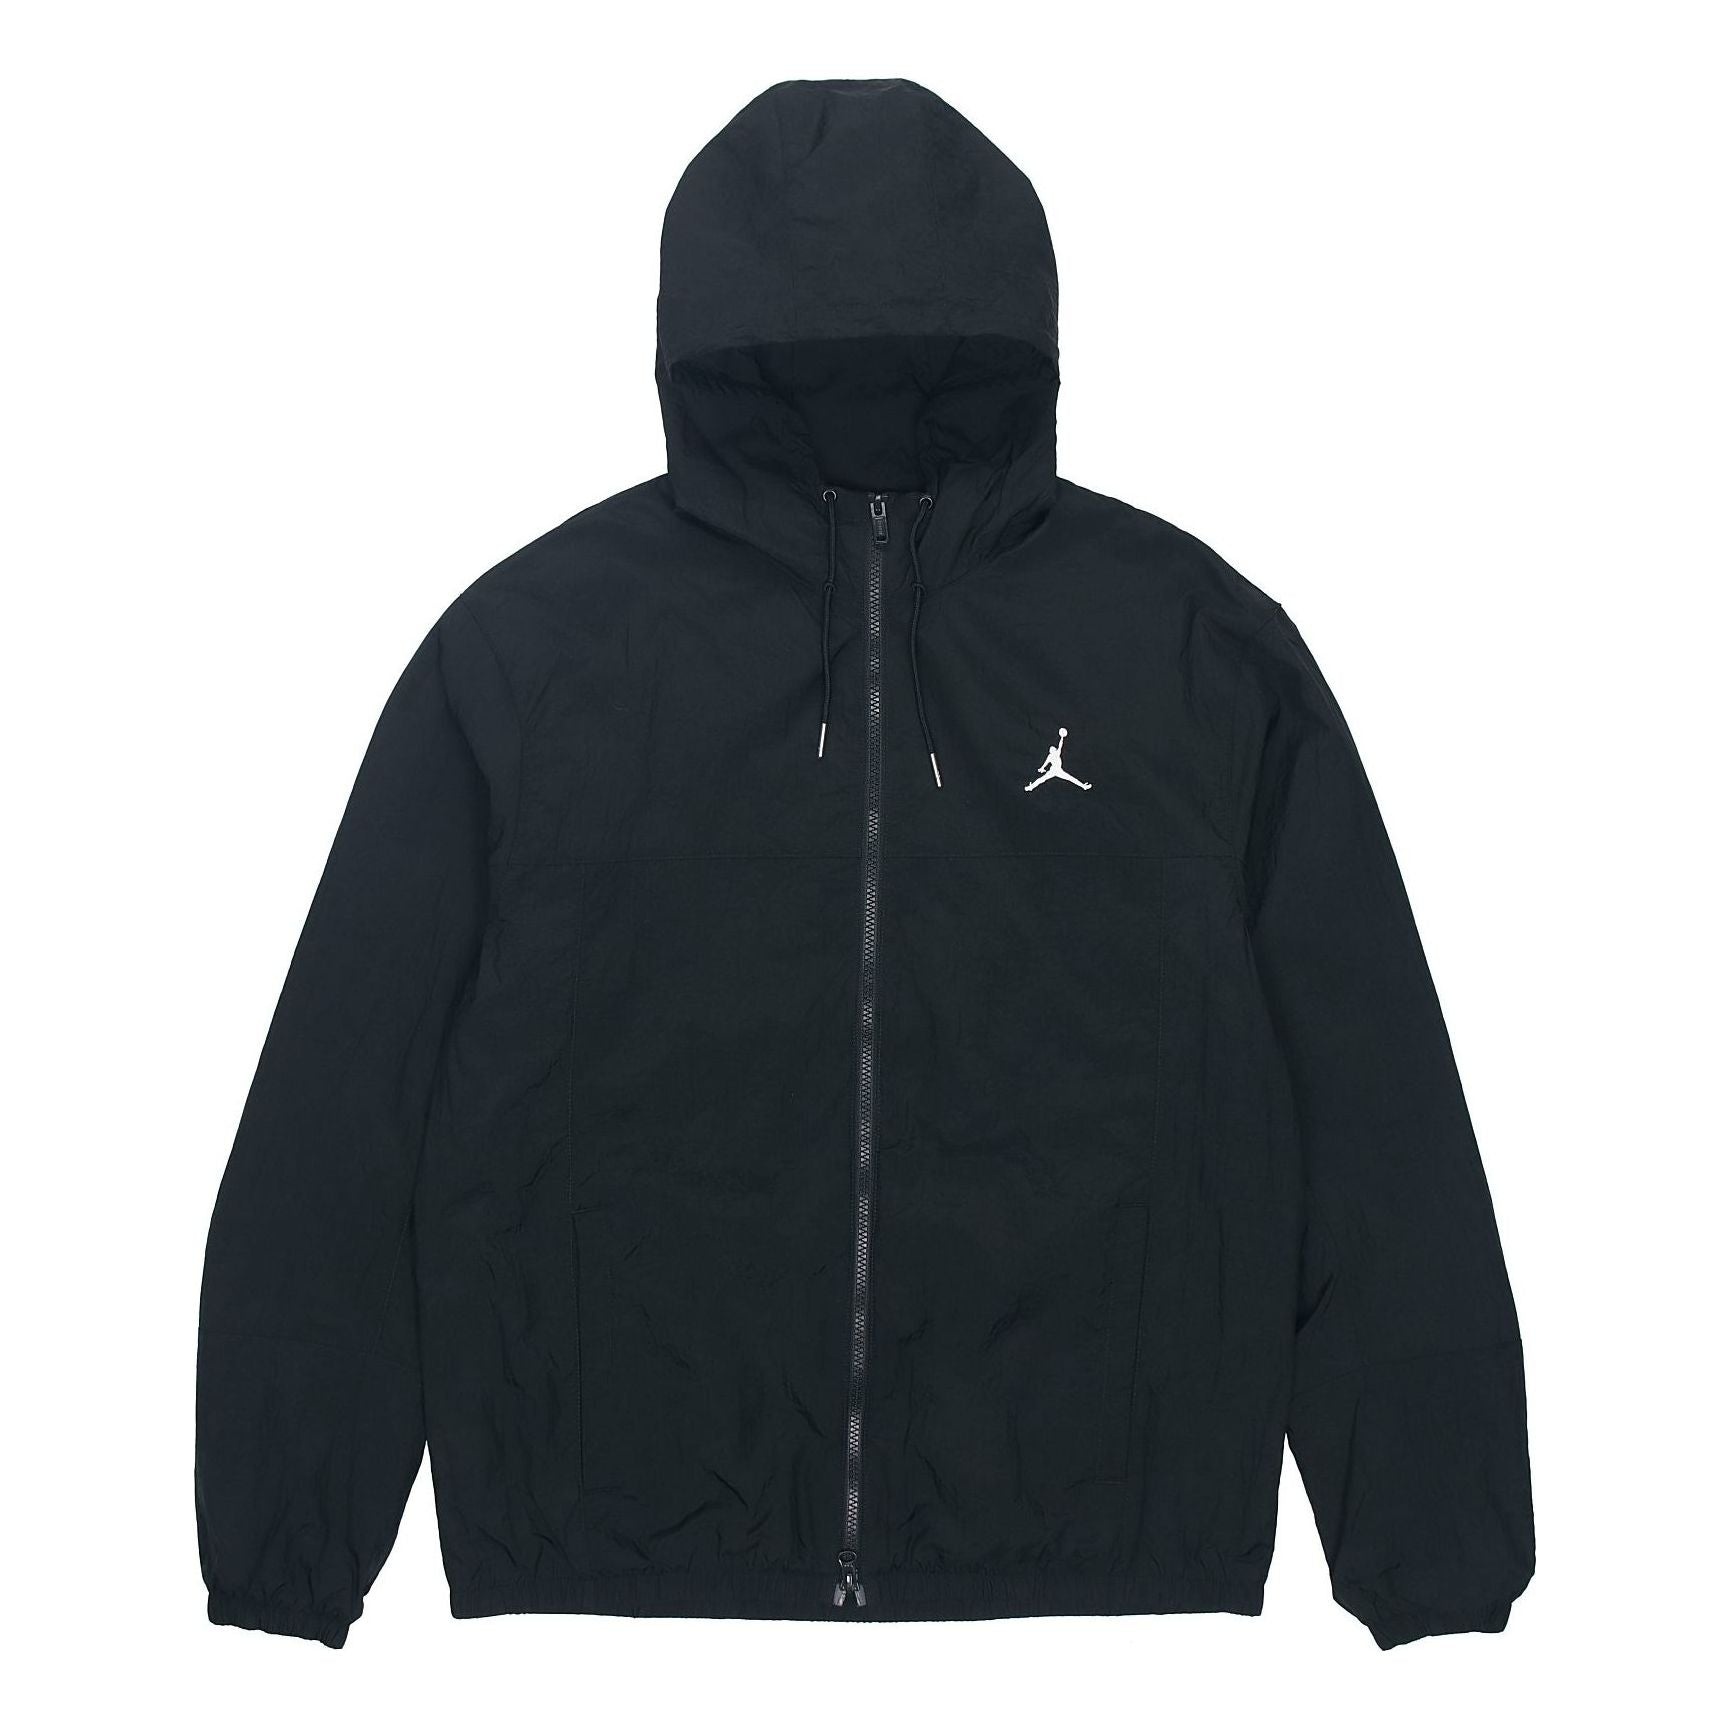 Air Jordan SS22 Solid Color Windproof Long Sleeves Jacket Black DJ0253-010 - 1